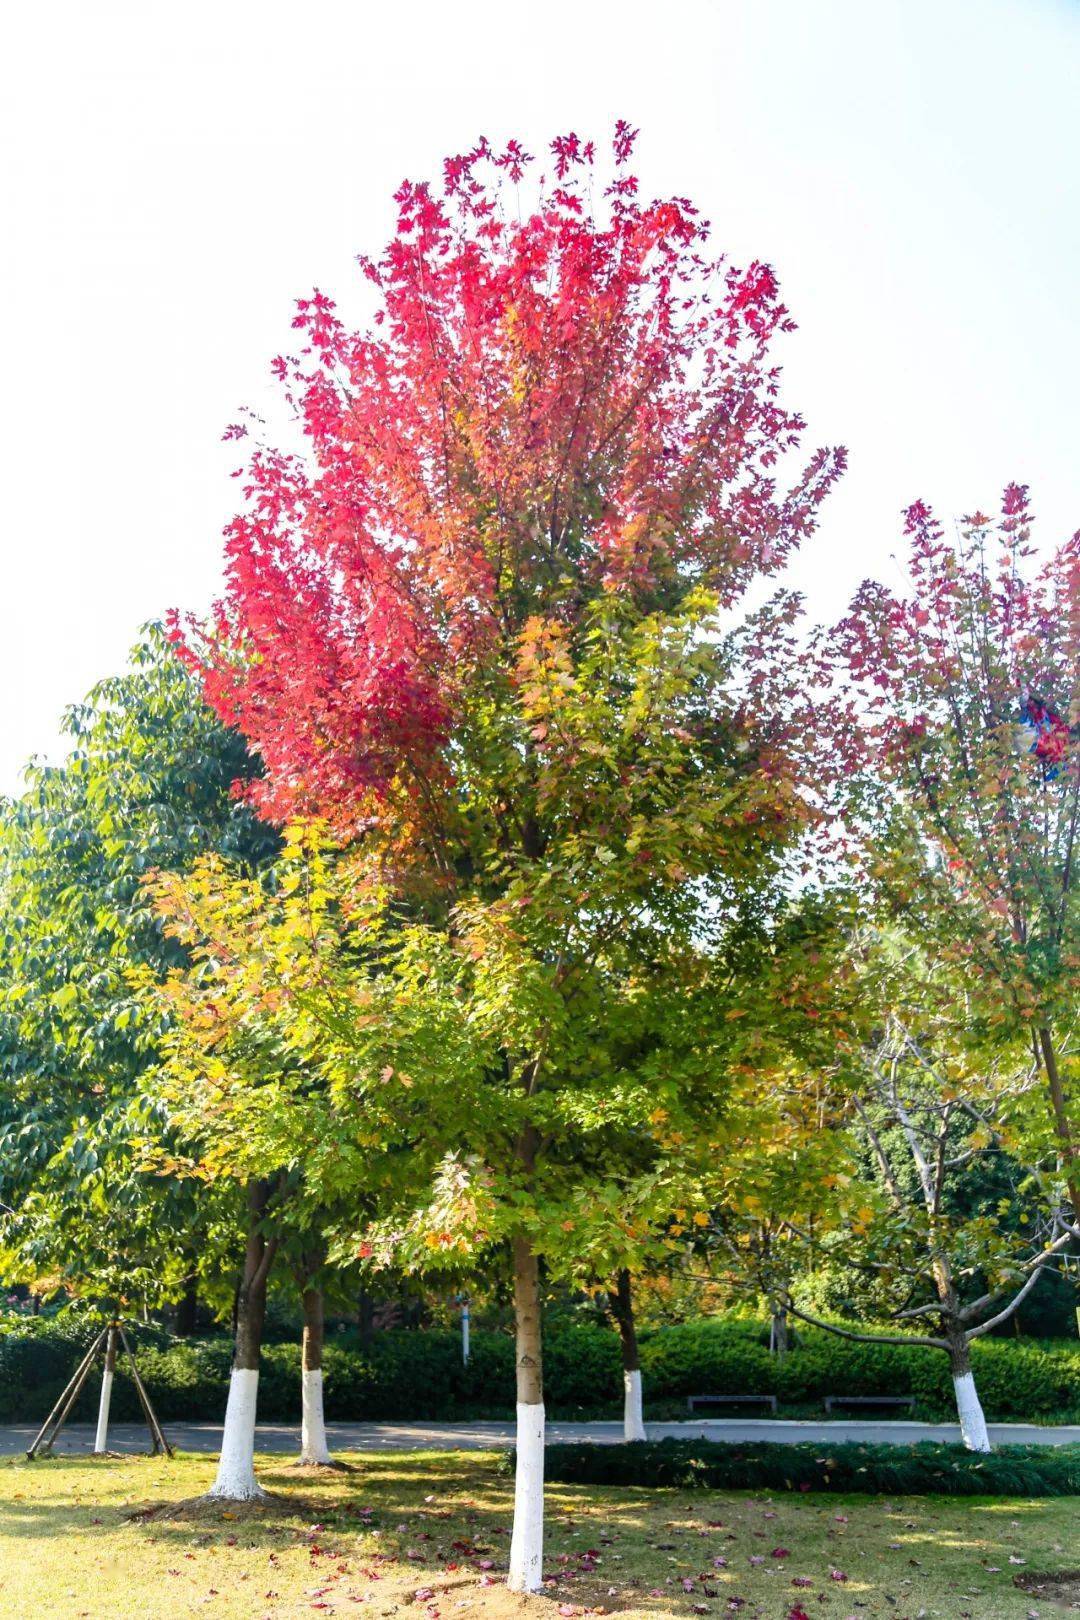 【智慧旅游】秋季限定色叶树!快将油画般的秋天藏进口袋里吧!